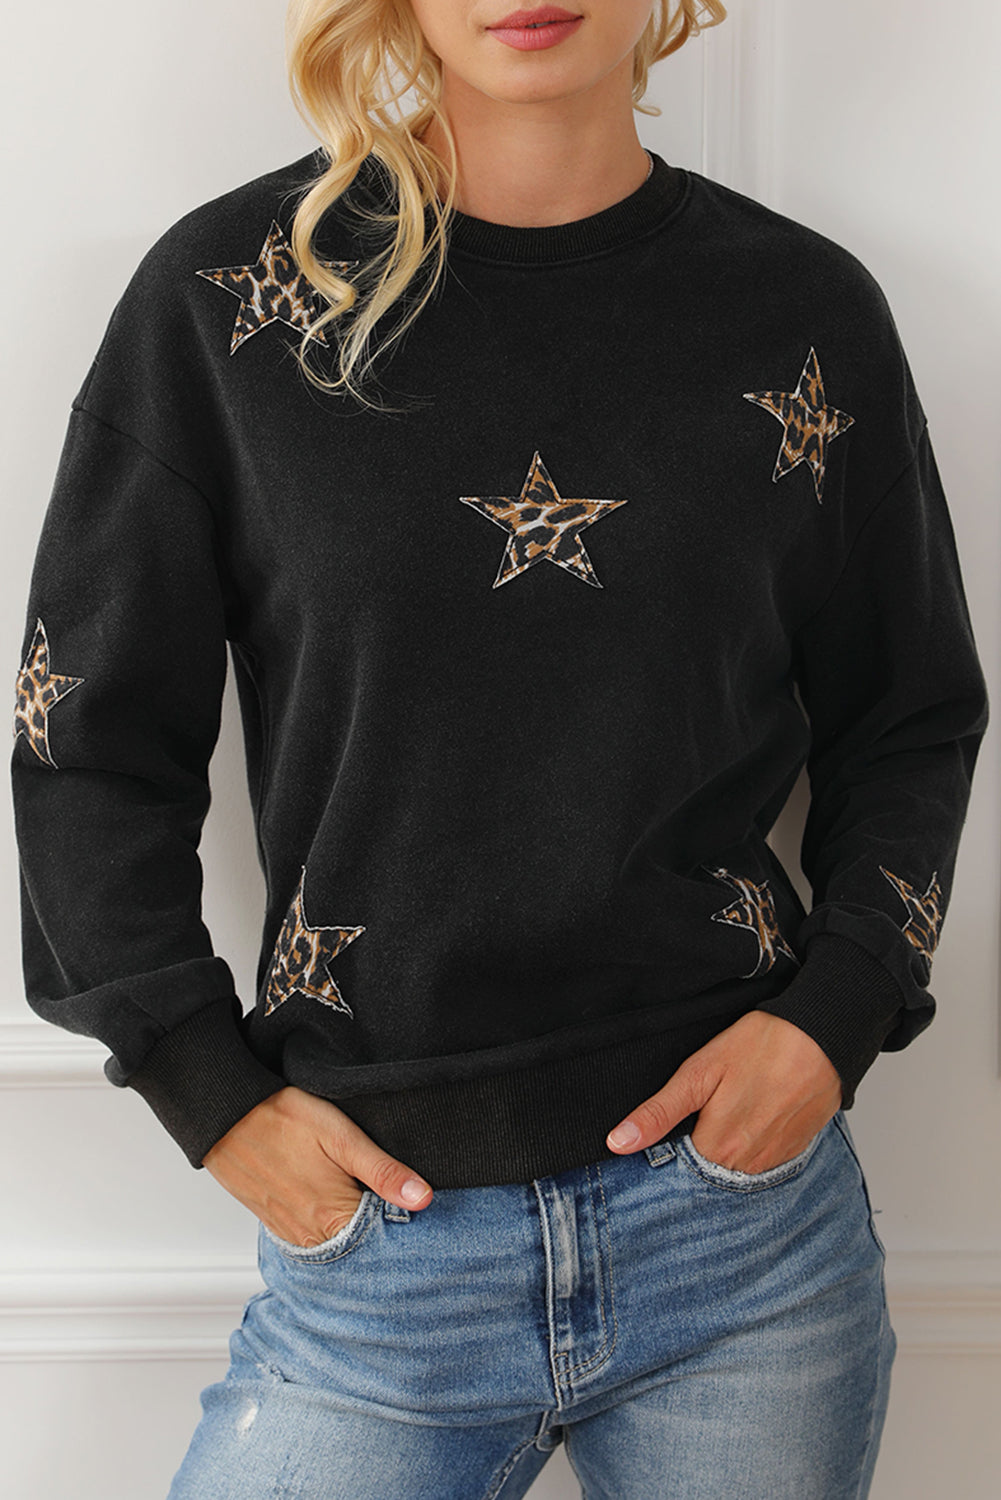 Crna majica s leopardovim zvijezdama i spuštenim ramenima